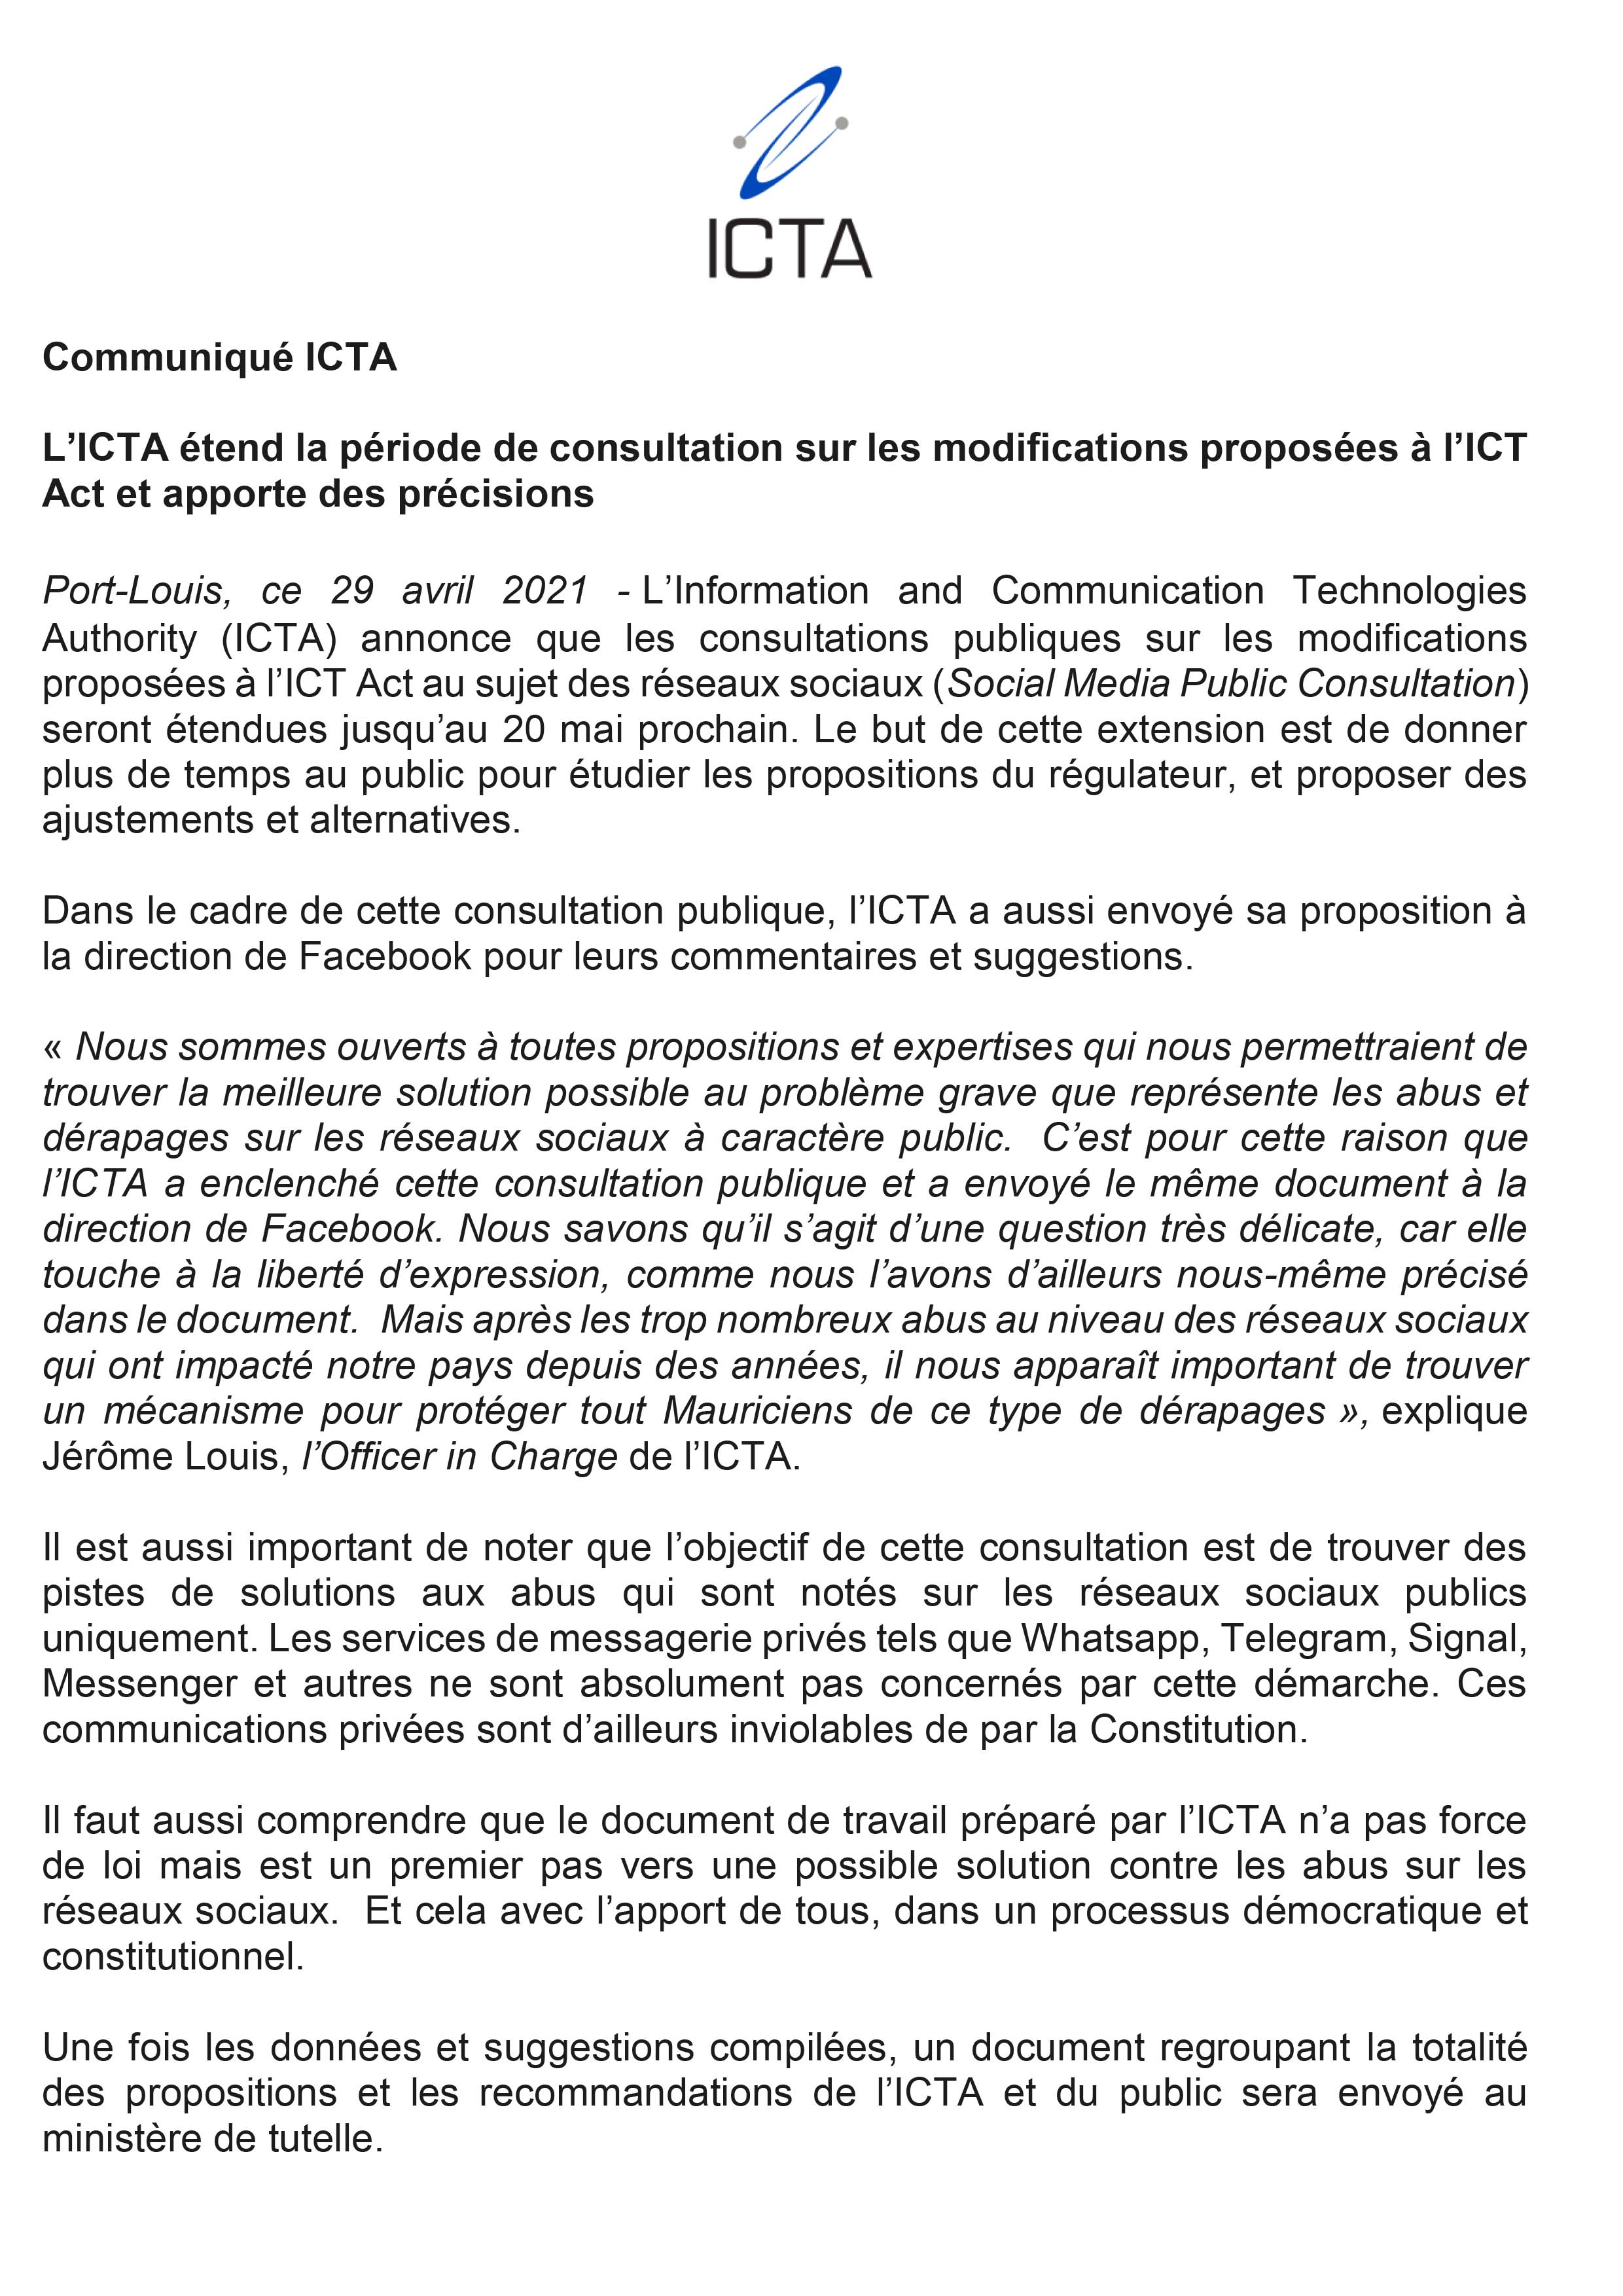 Communiqué de presse - L’ICTA étend la période de consultation